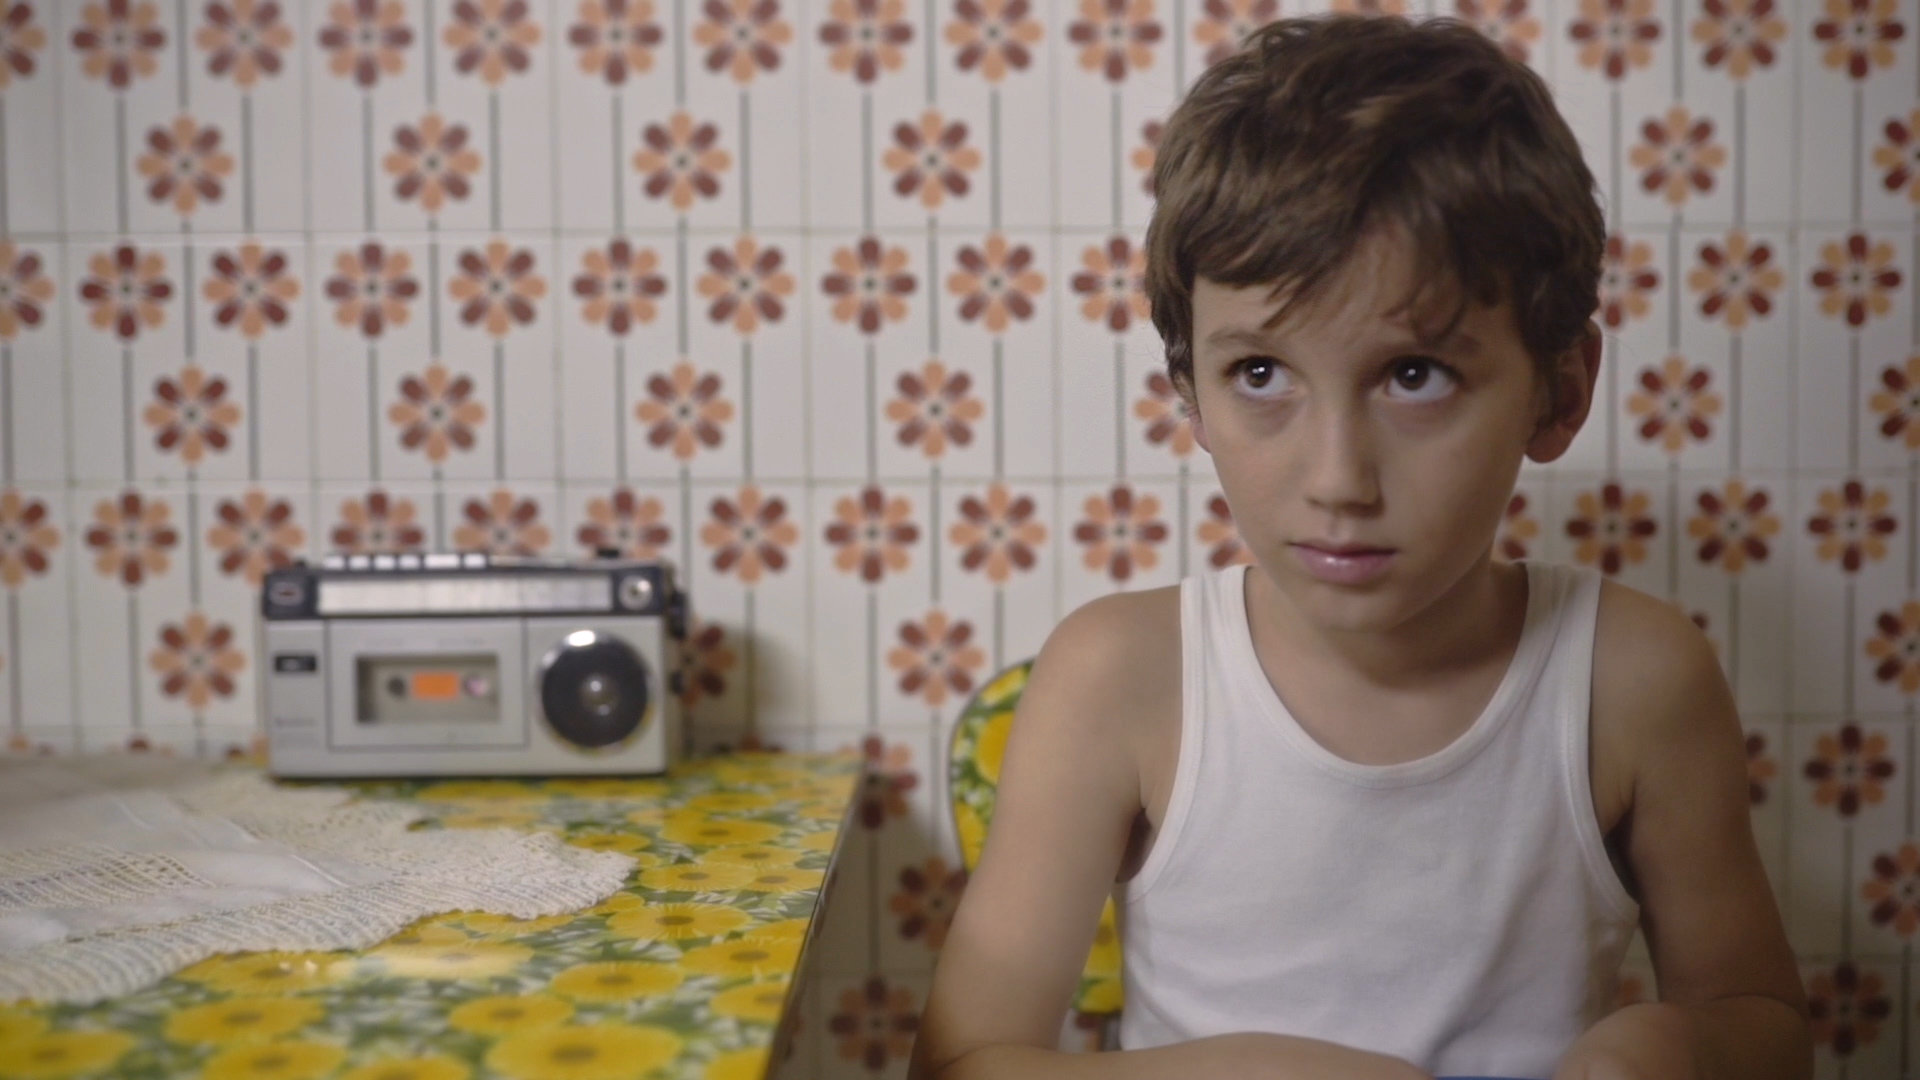 Υπάρχει μια ταινία που η ελληνική παθογένεια χωράει σε έναν κουβά με φασολάκια